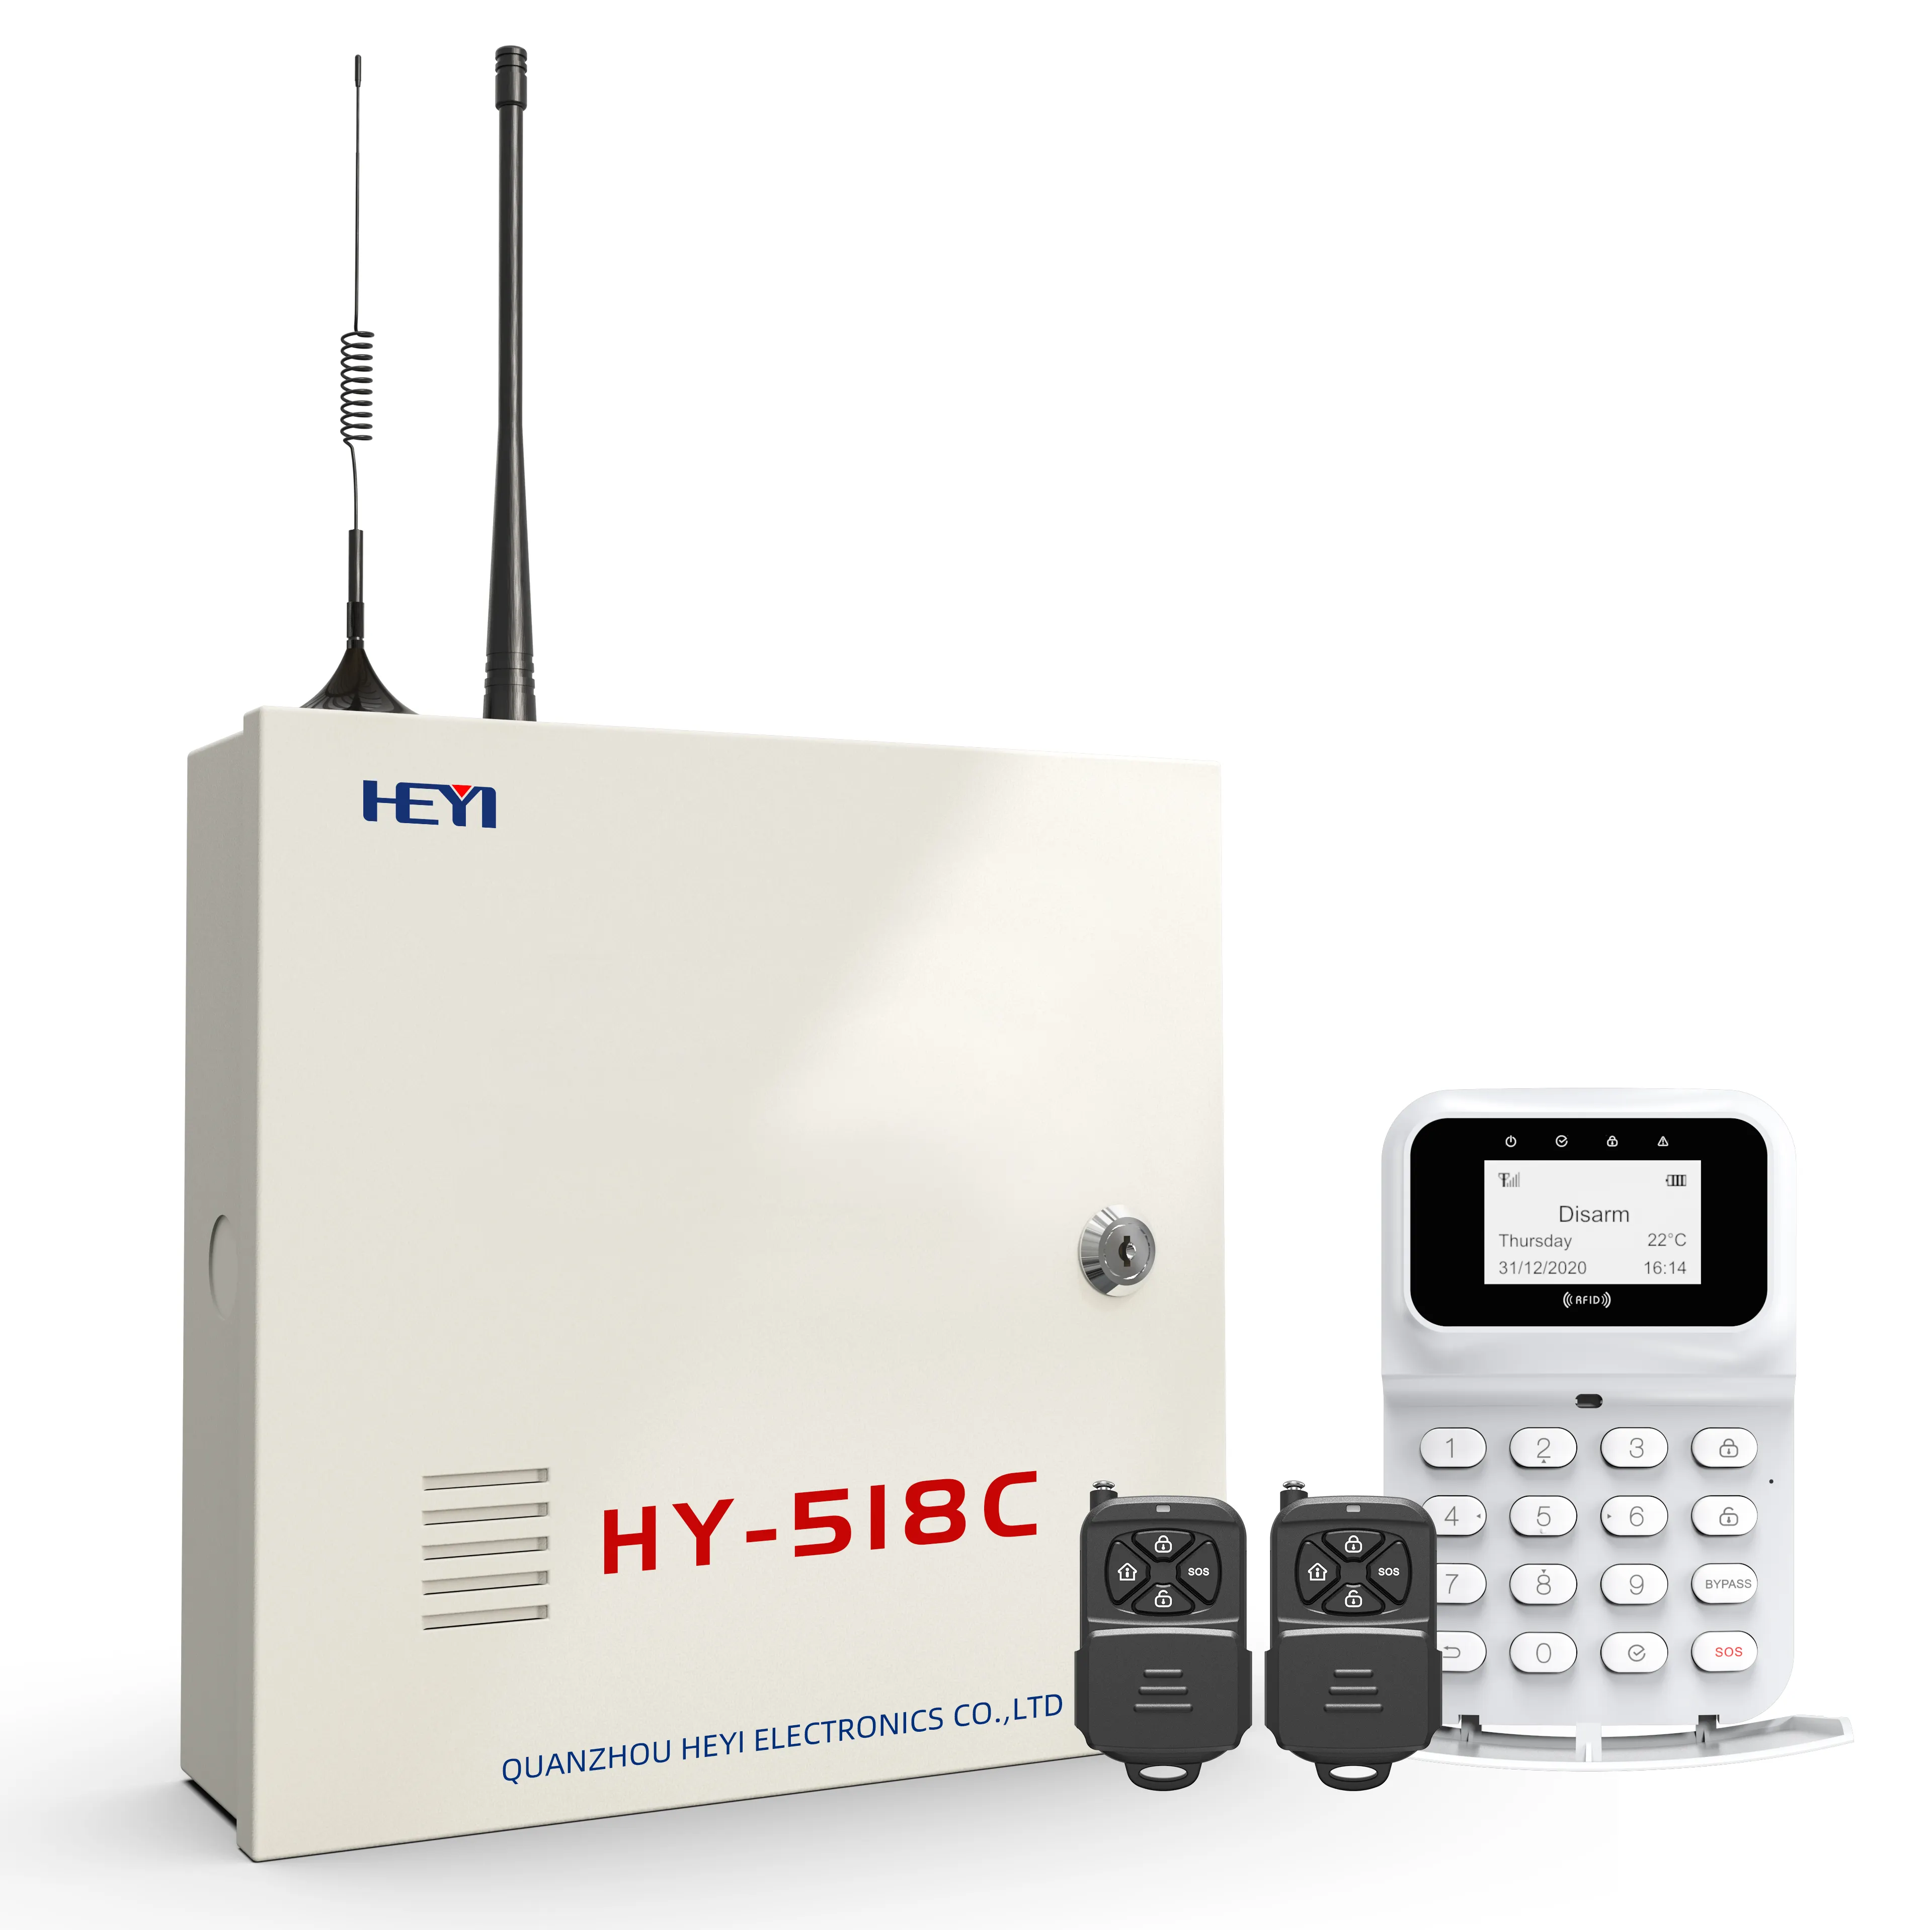 Yüksek kaliteli HEYI kablosuz kablolu endüstri mühendisliği Alarm paneli ile GSM GPRS 2G tcp/ip LAN ağı ev hırsız sistemi